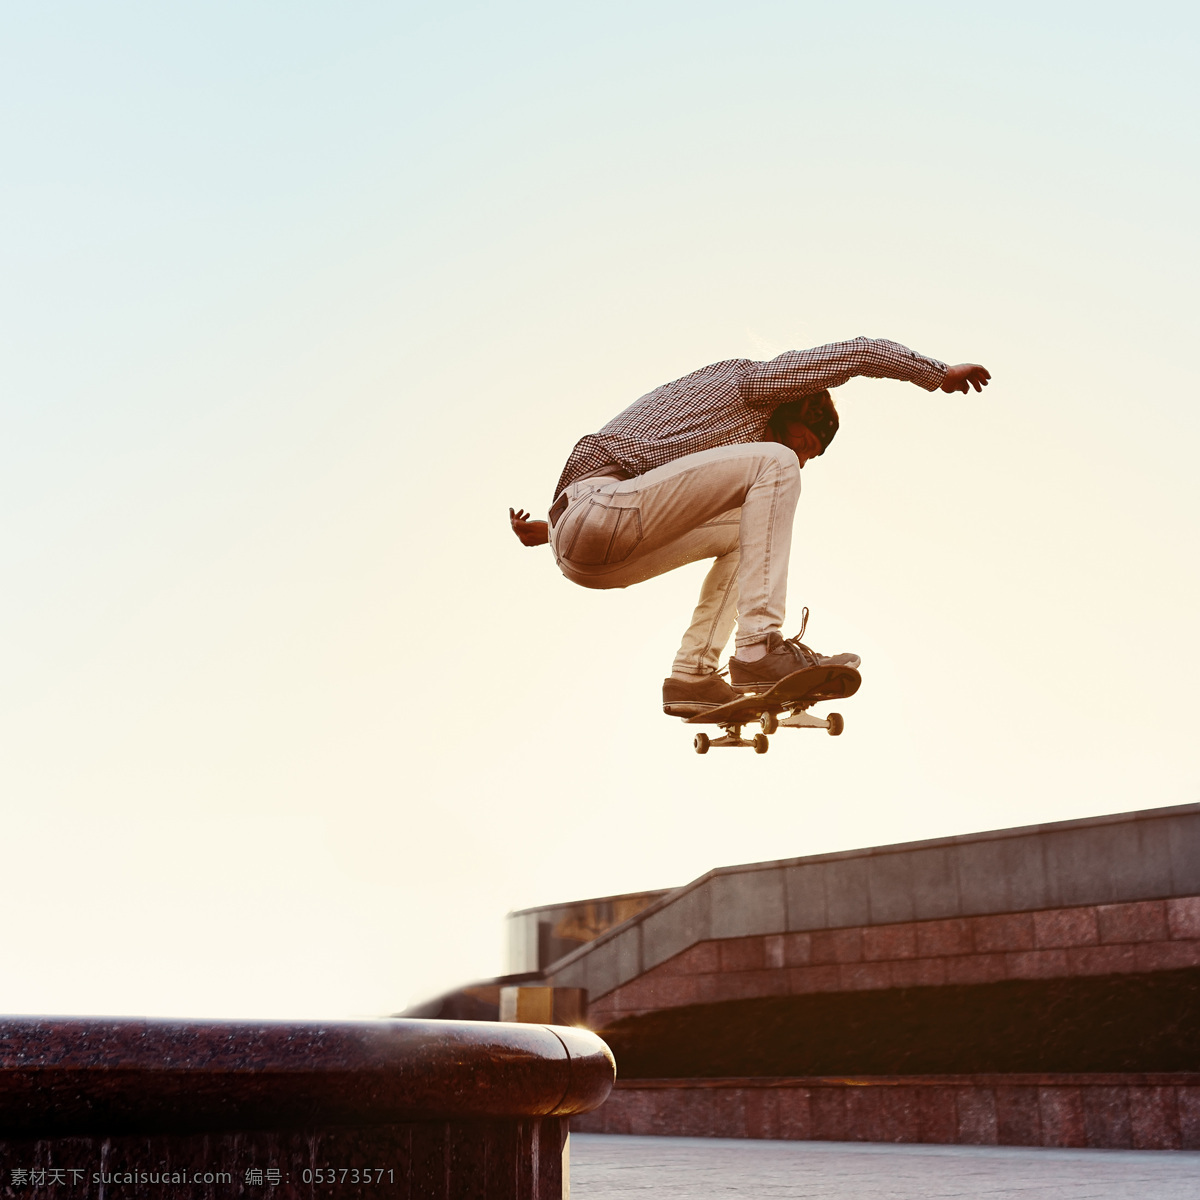 跳跃 滑板 帅哥 跳跃滑板帅哥 男人 动感人物 滑板运动 体育运动 生活百科